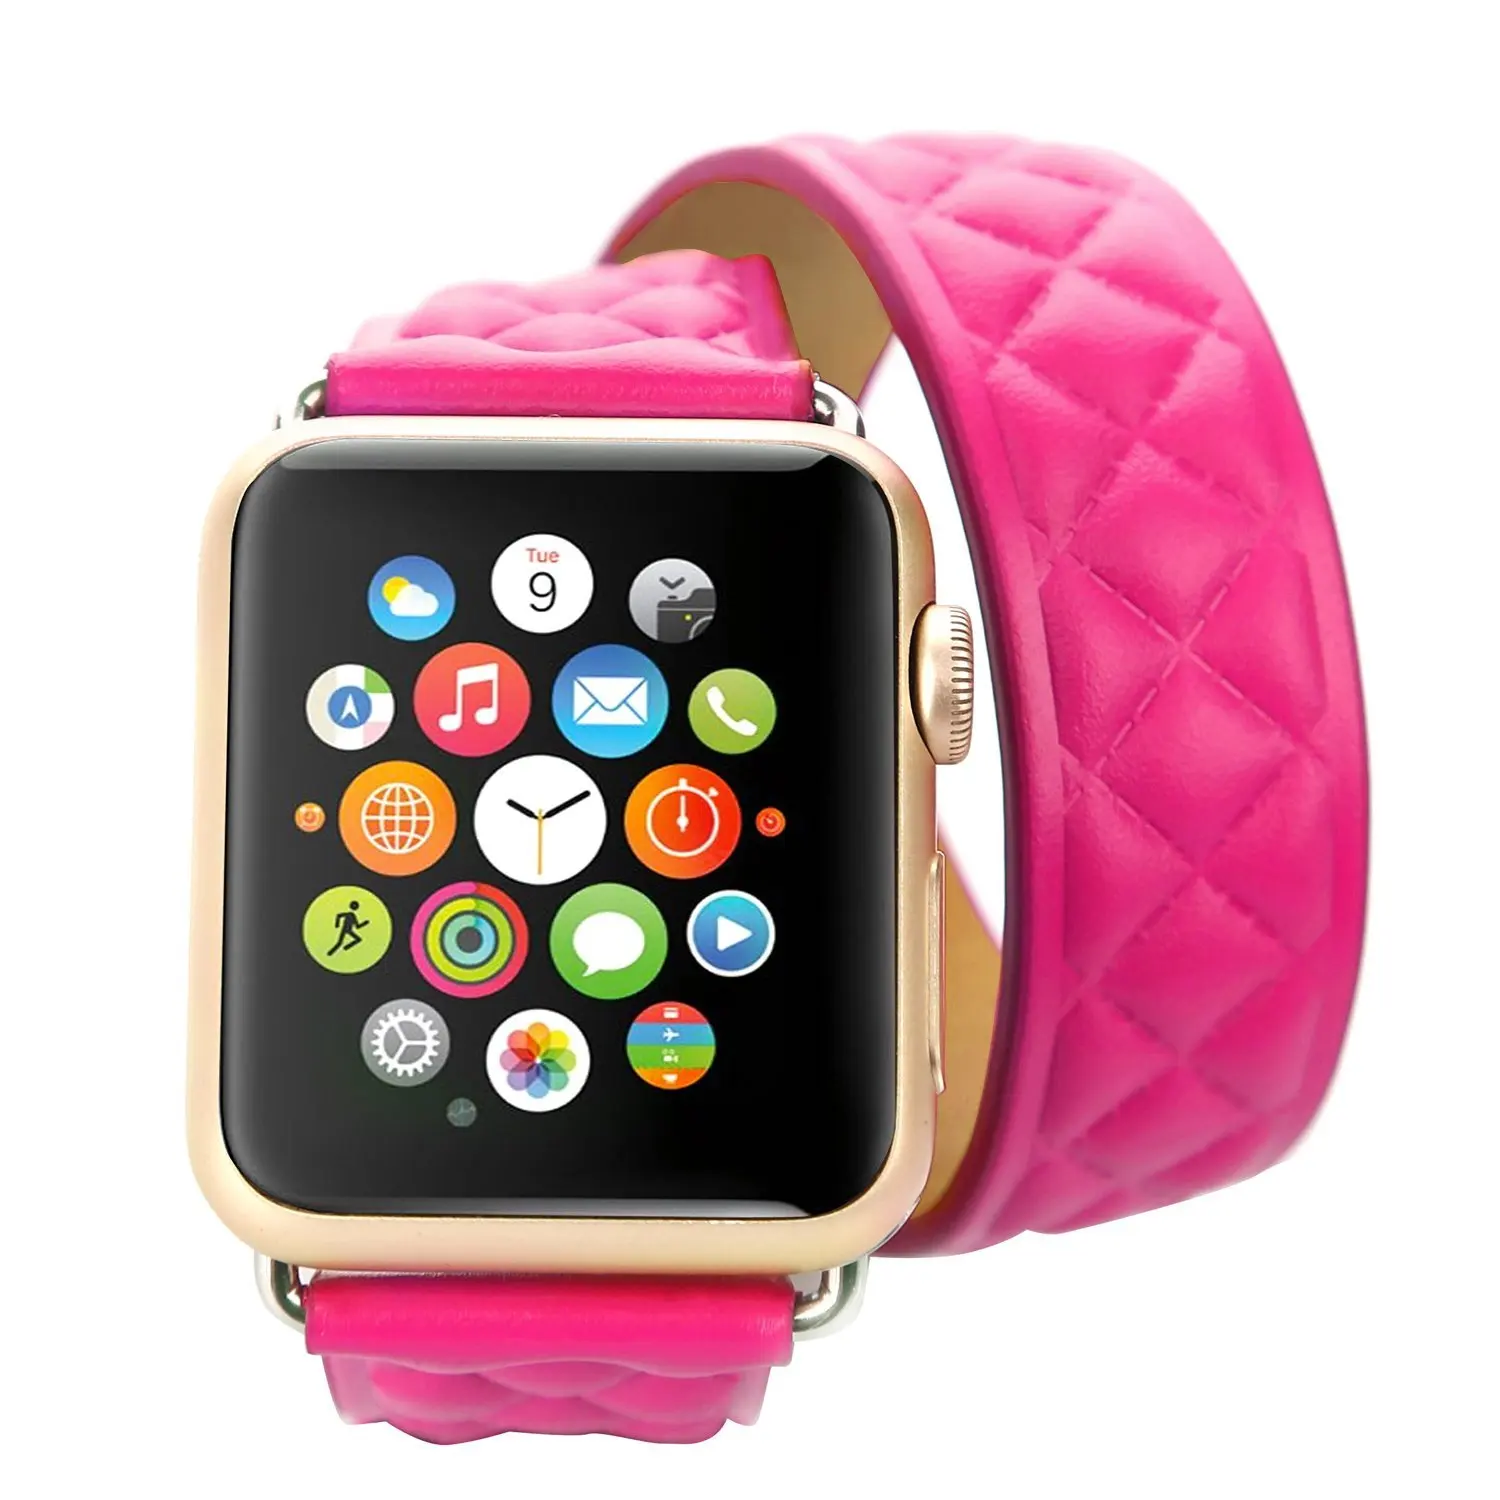 hermes apple watch pink